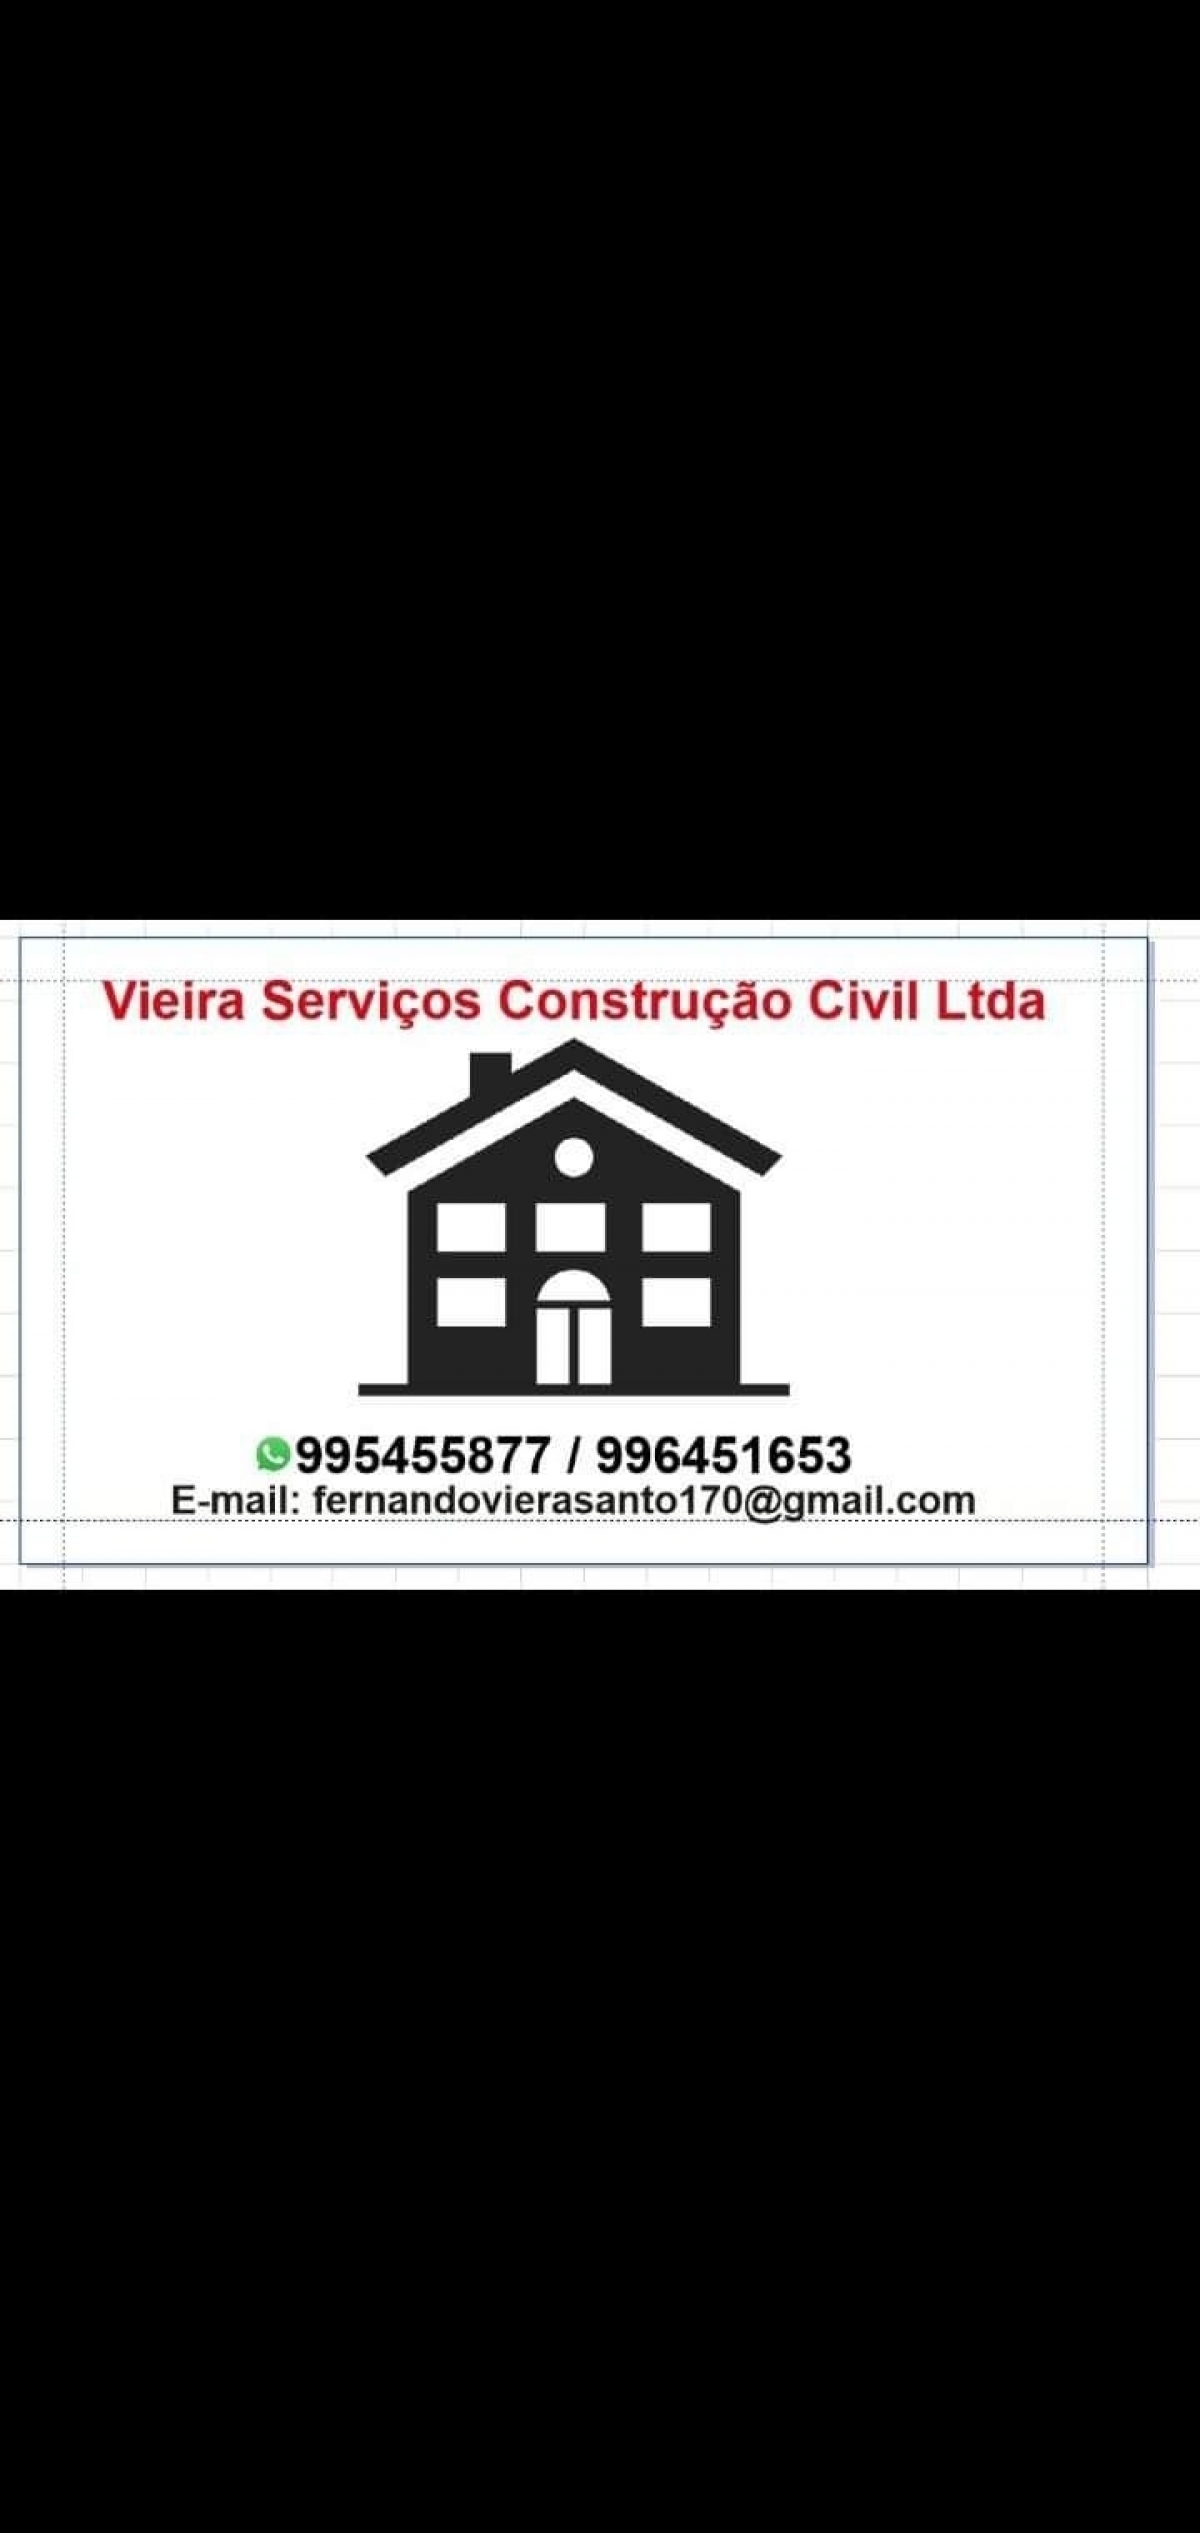 Vendo uma empresa de construção civil Ltda 